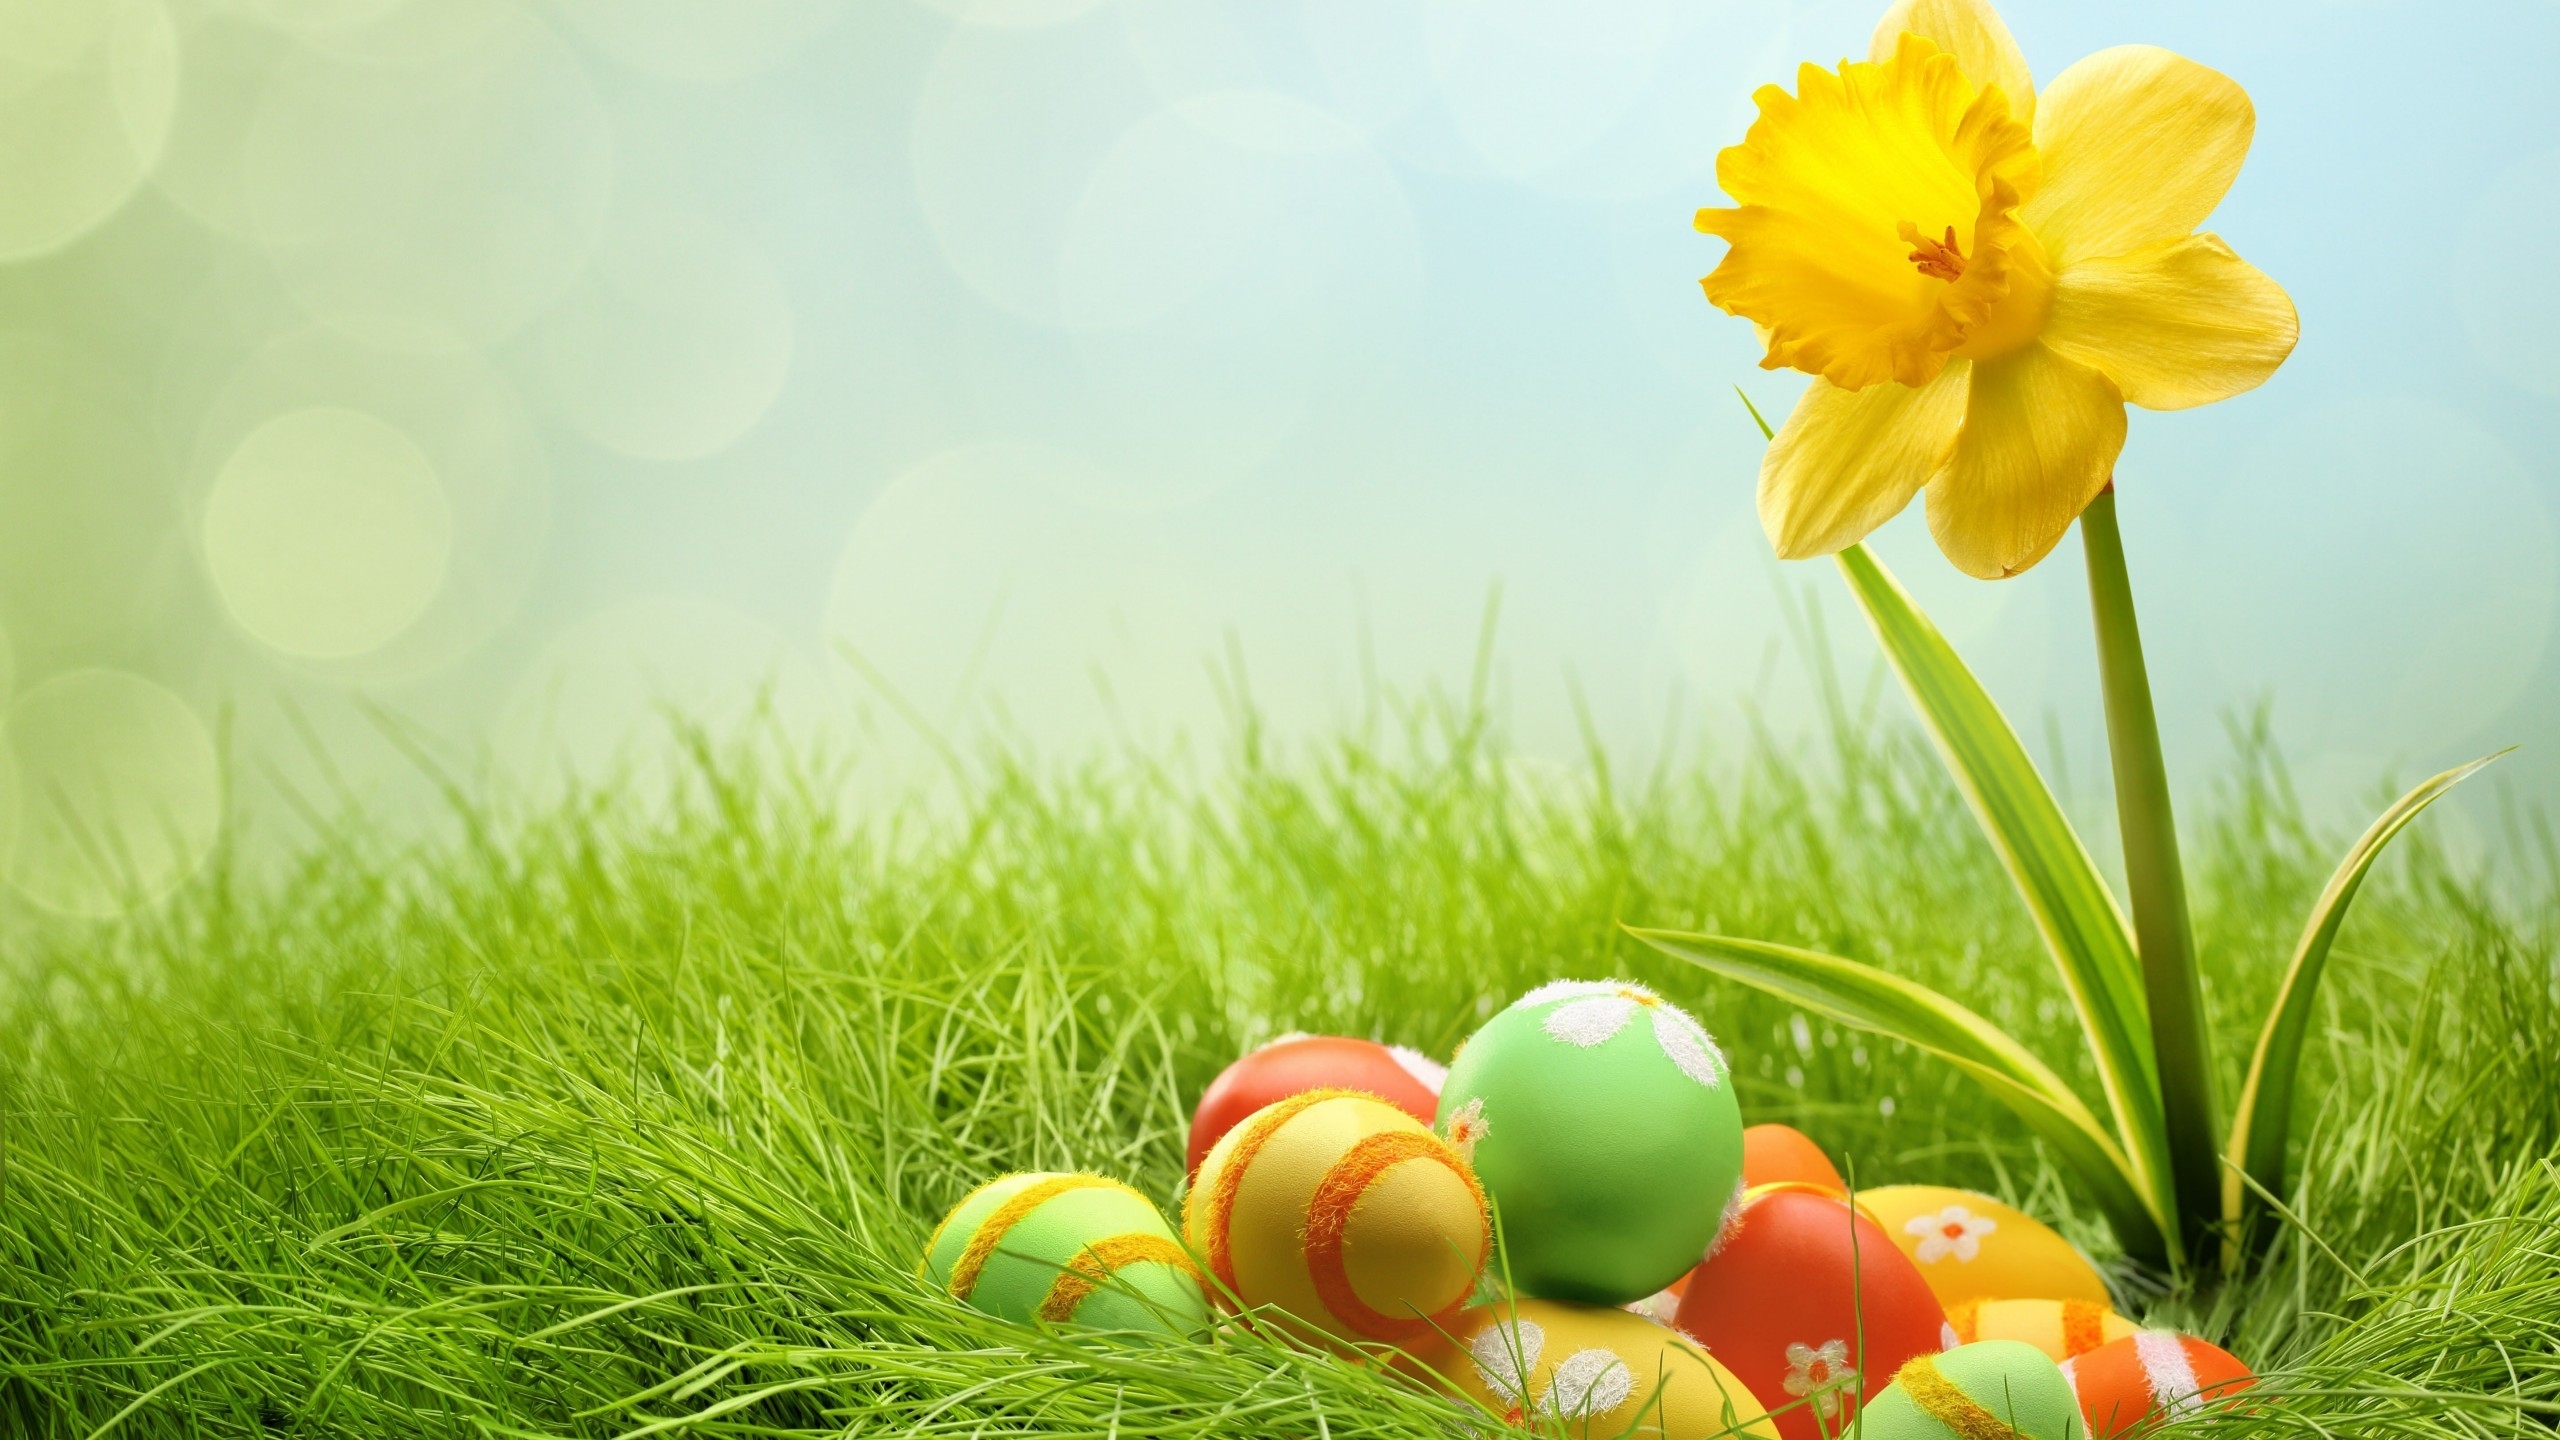 2014 Easter Eggs for 2560x1440 HDTV resolution